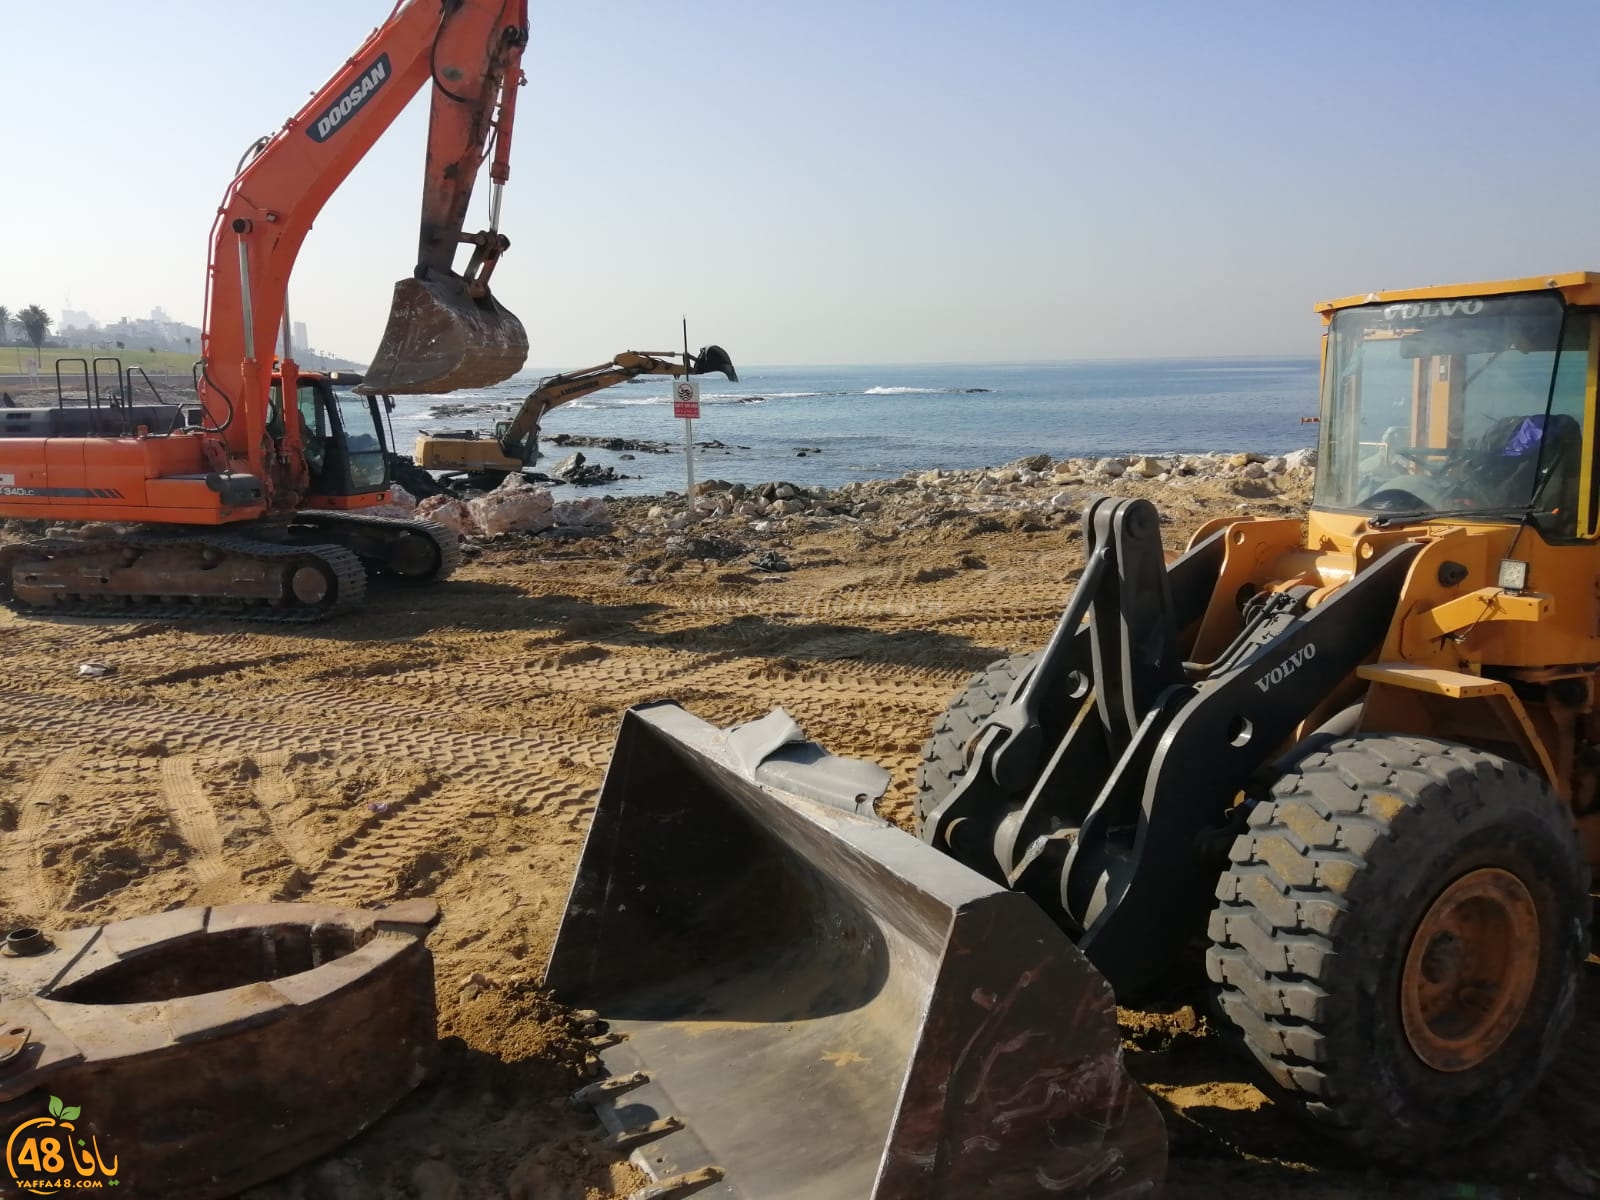  عمليات تنظيف واسعة لشاطئ العجمي بيافا وازالة بقايا البيوت المهدّمة